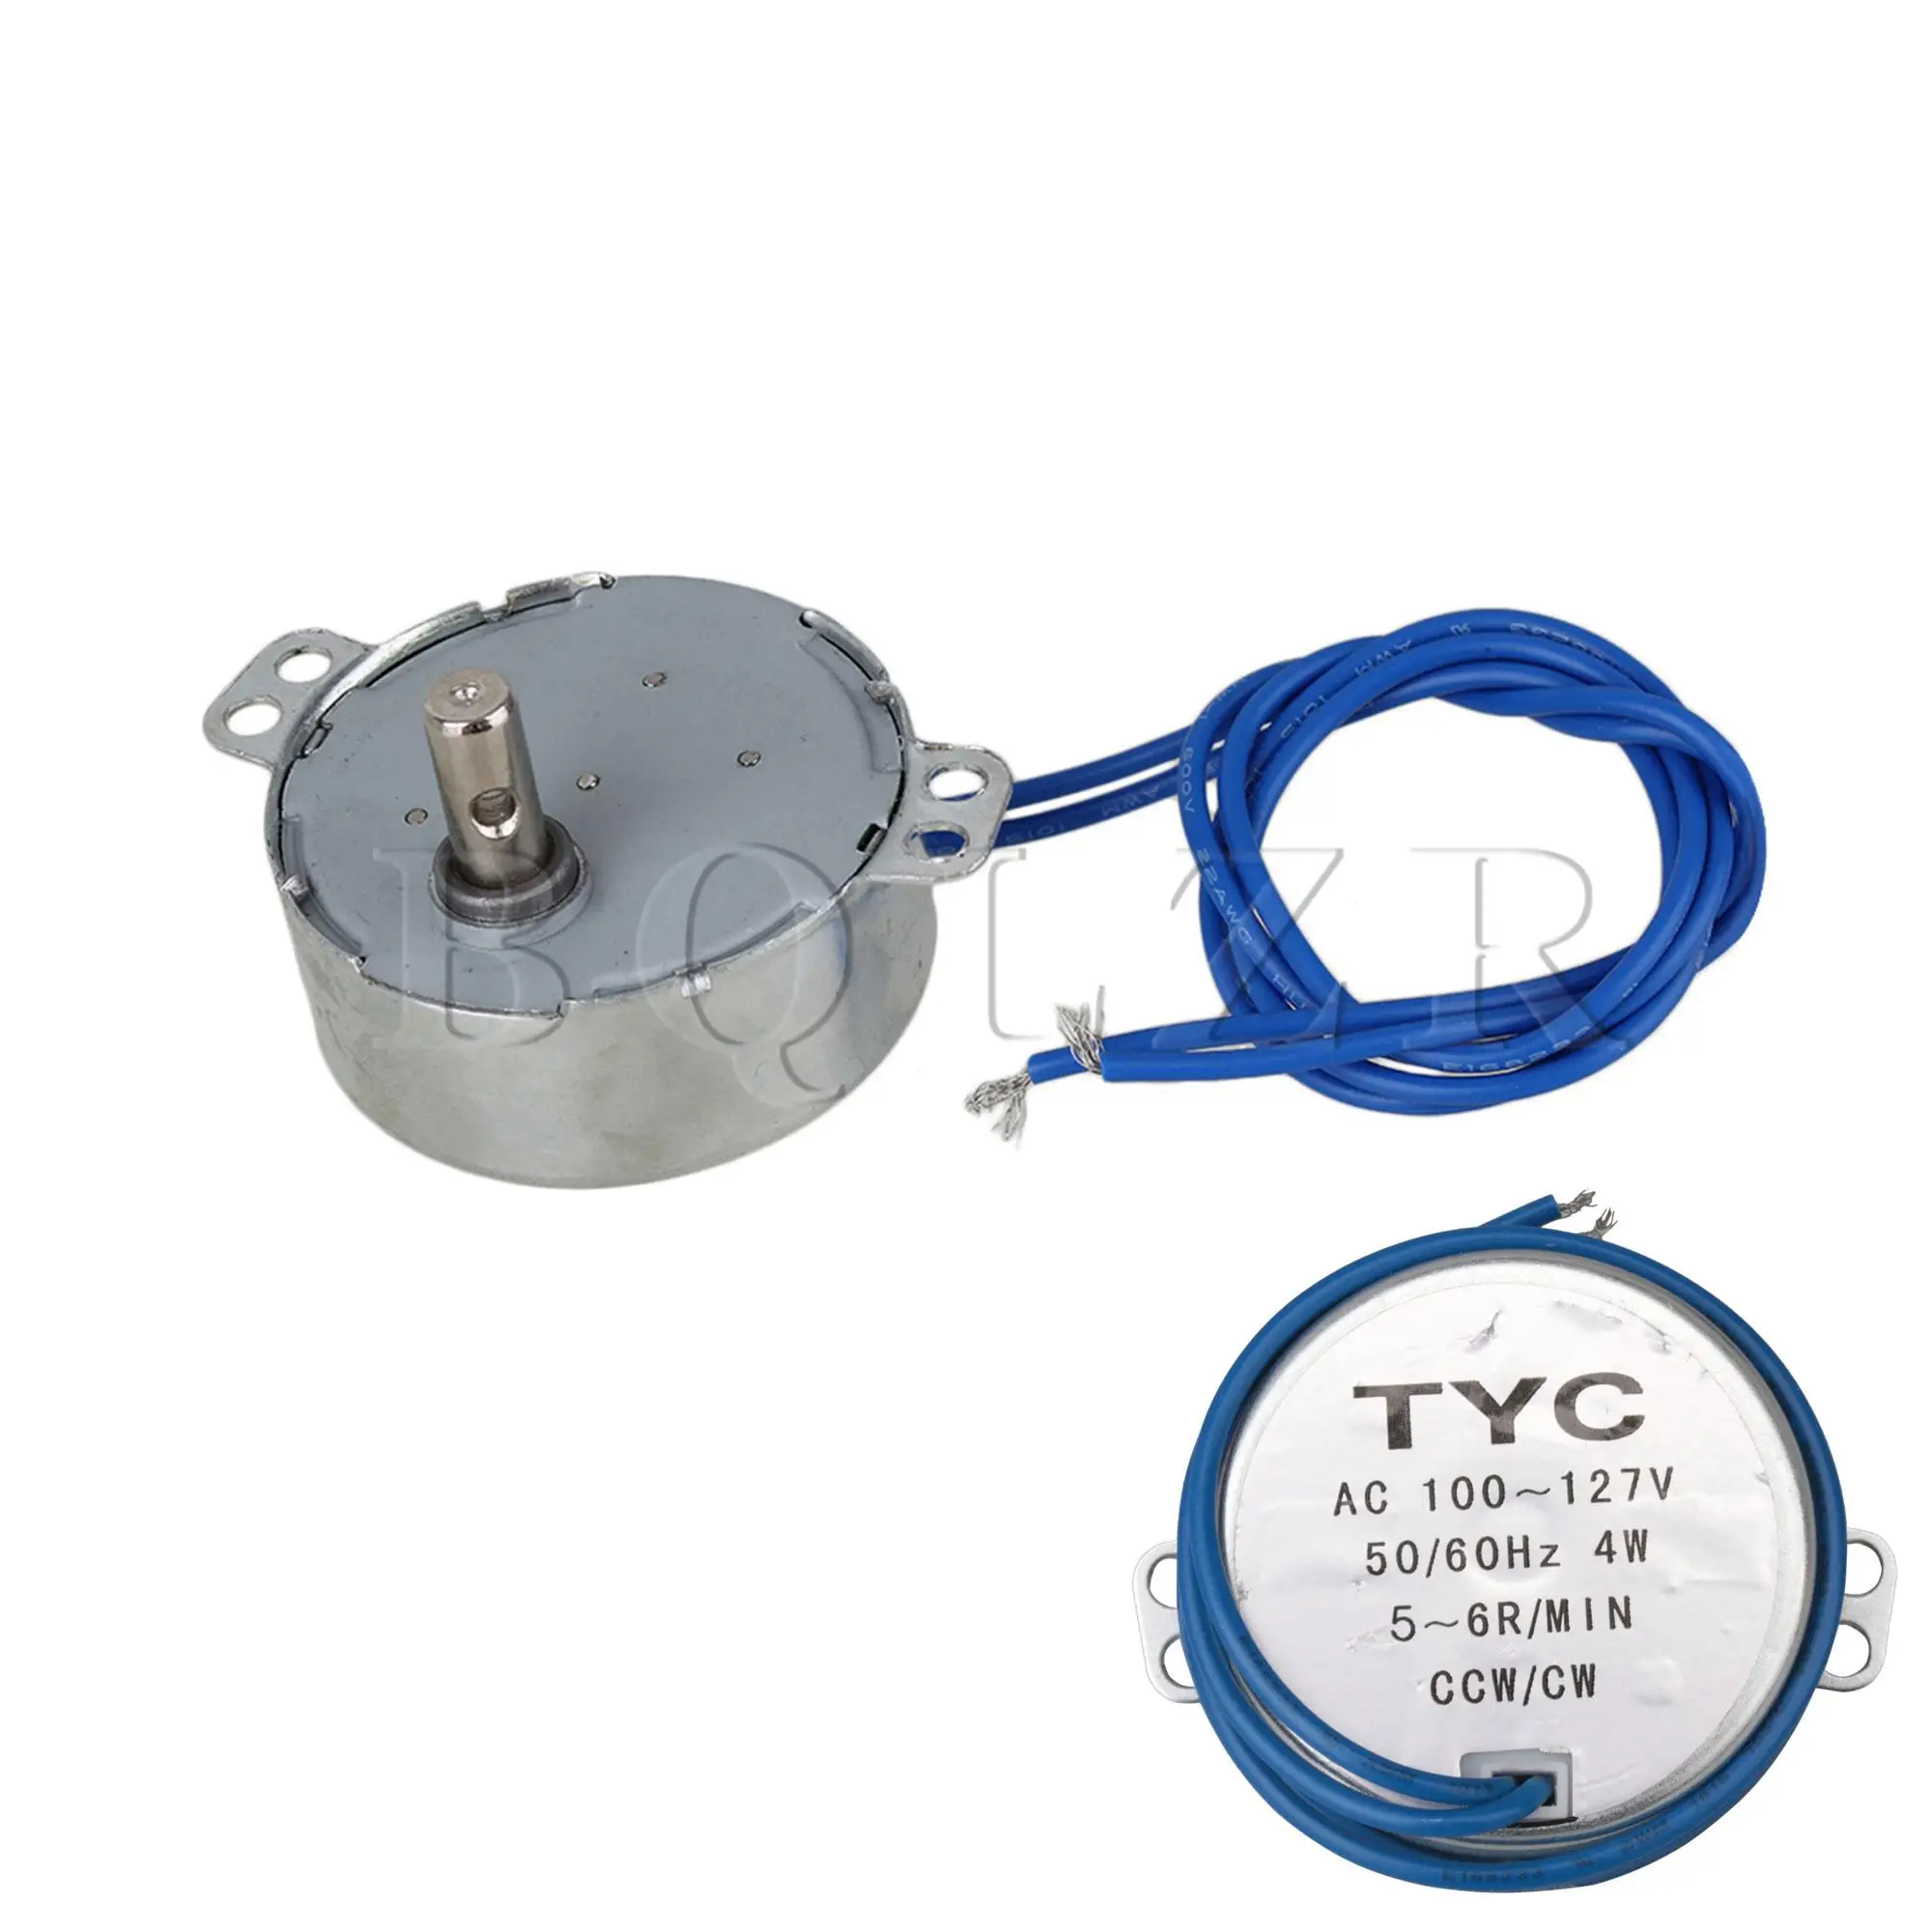 5 x TYC-50 AC110-127V Synchronous Motor 5-6 RPM CW/CCW 4W Torque 4KGF.CM Silver 